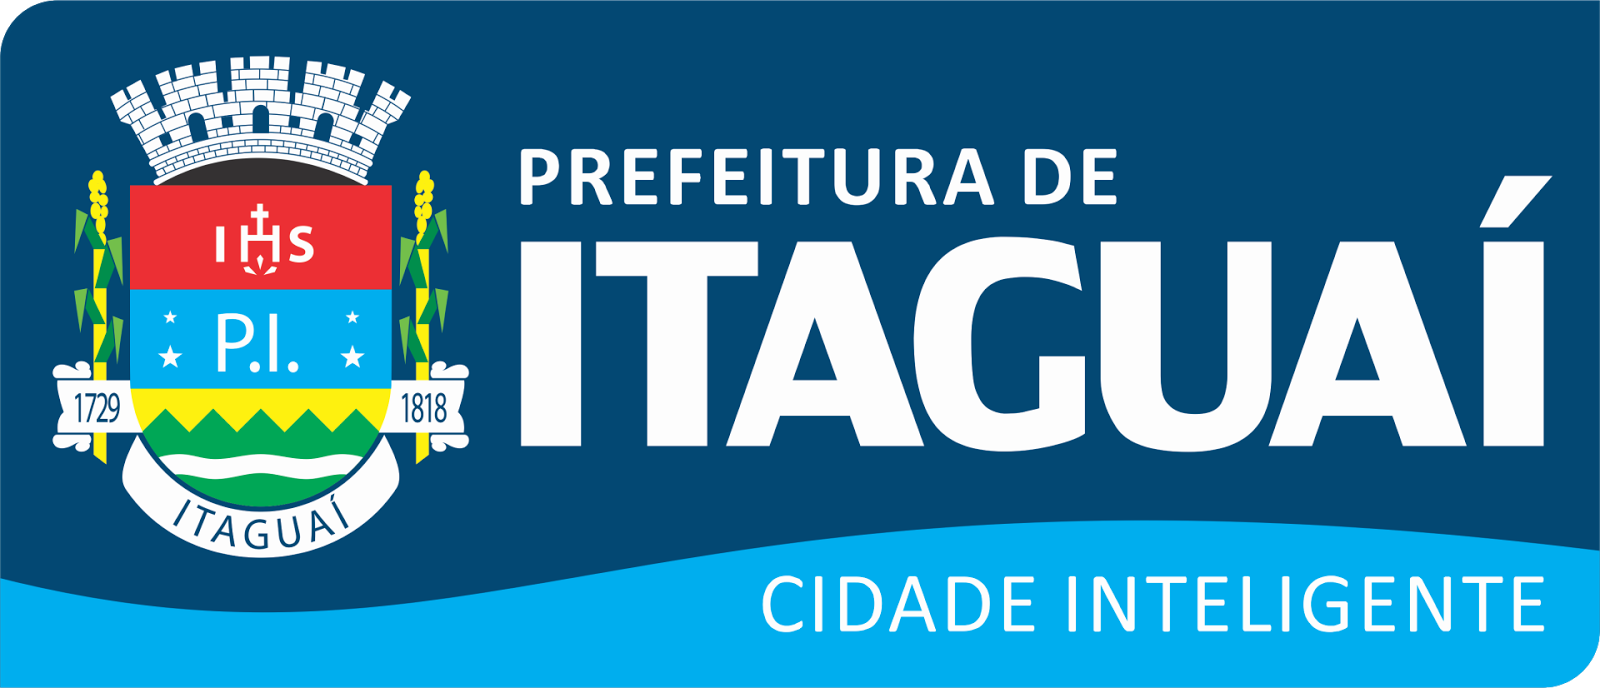 Após decisão judicial, prefeitura de Itaguaí suspende festa da cidade